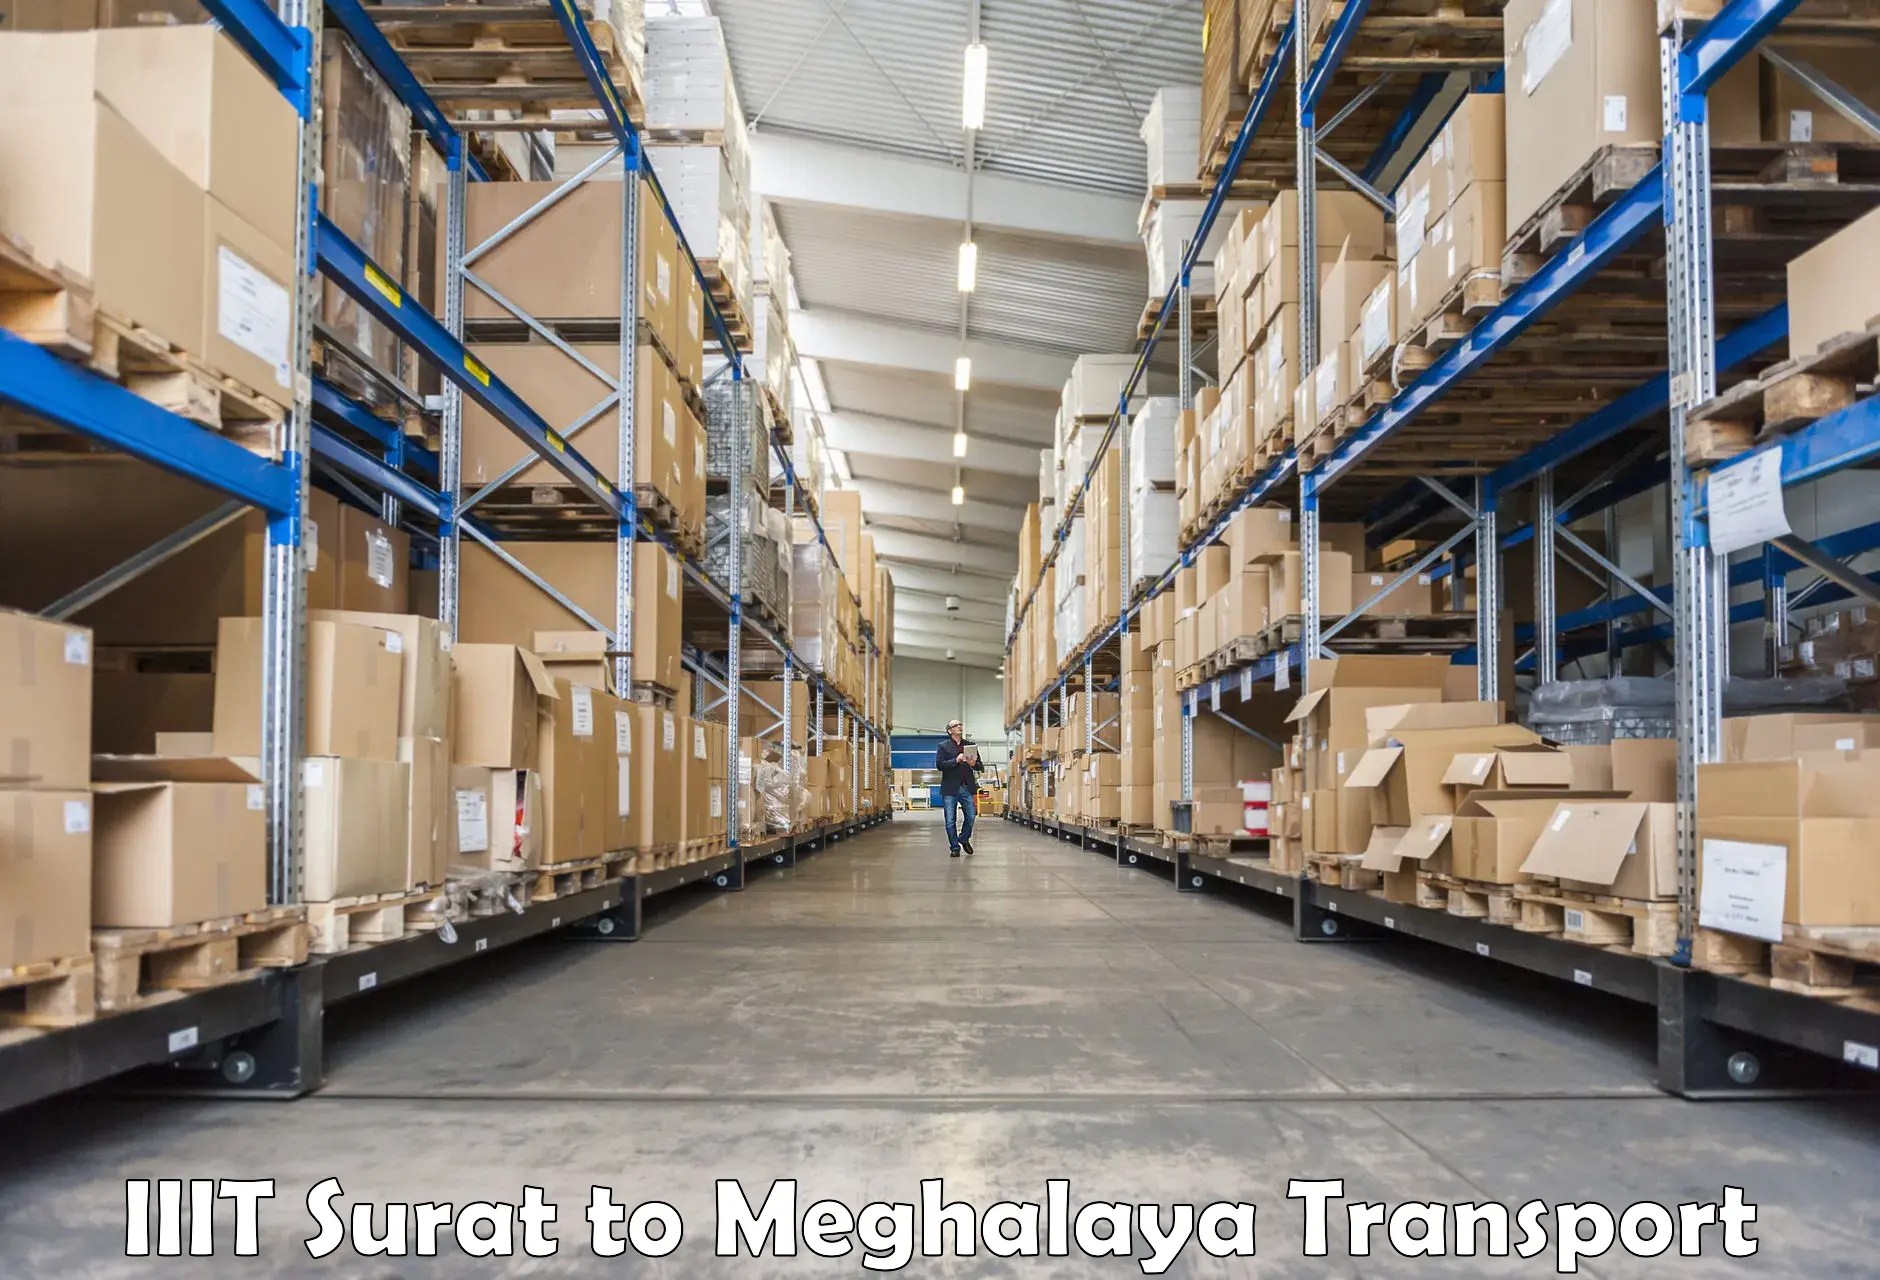 Online transport in IIIT Surat to Tura